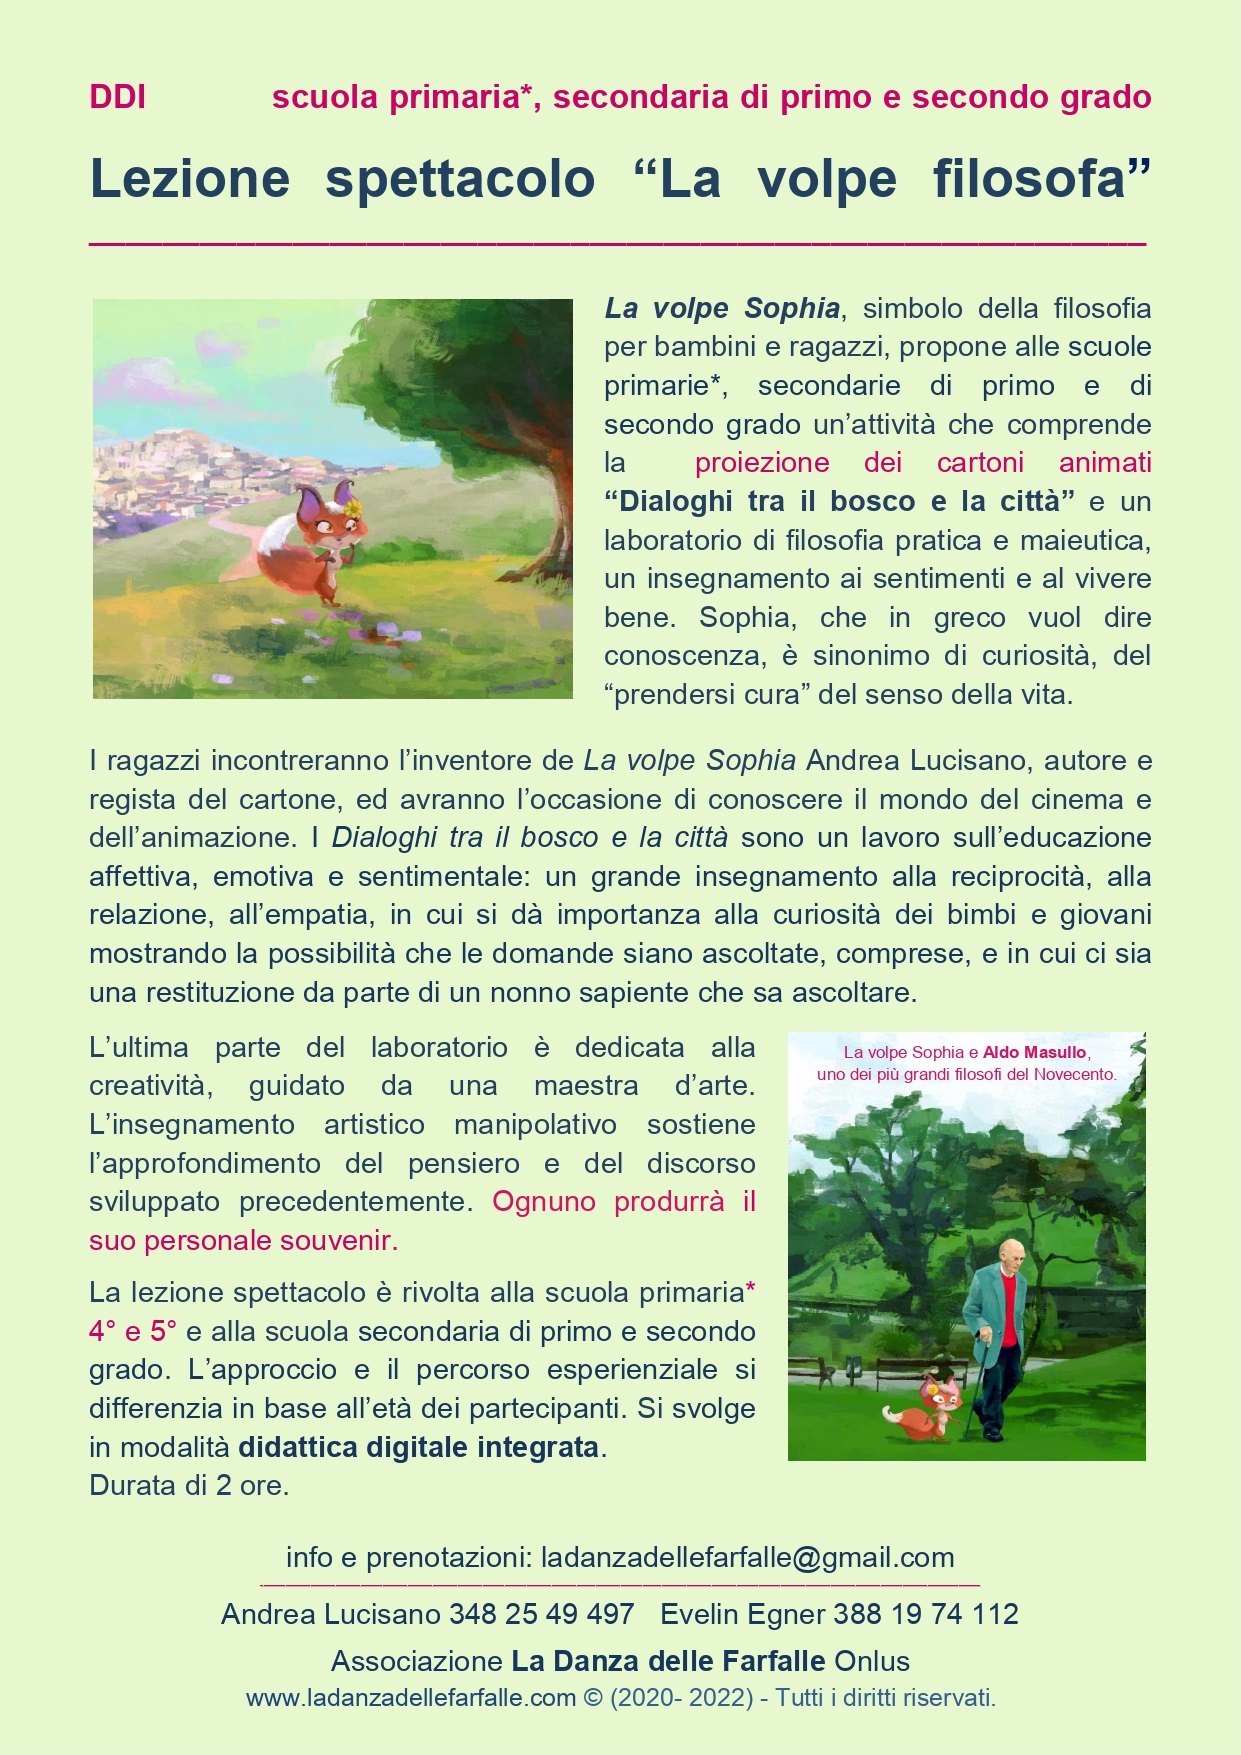 La volpe Sophia presentazione lezione spettacolo Dialoghi tra il bosco e la citta DDI 2021 22 sito